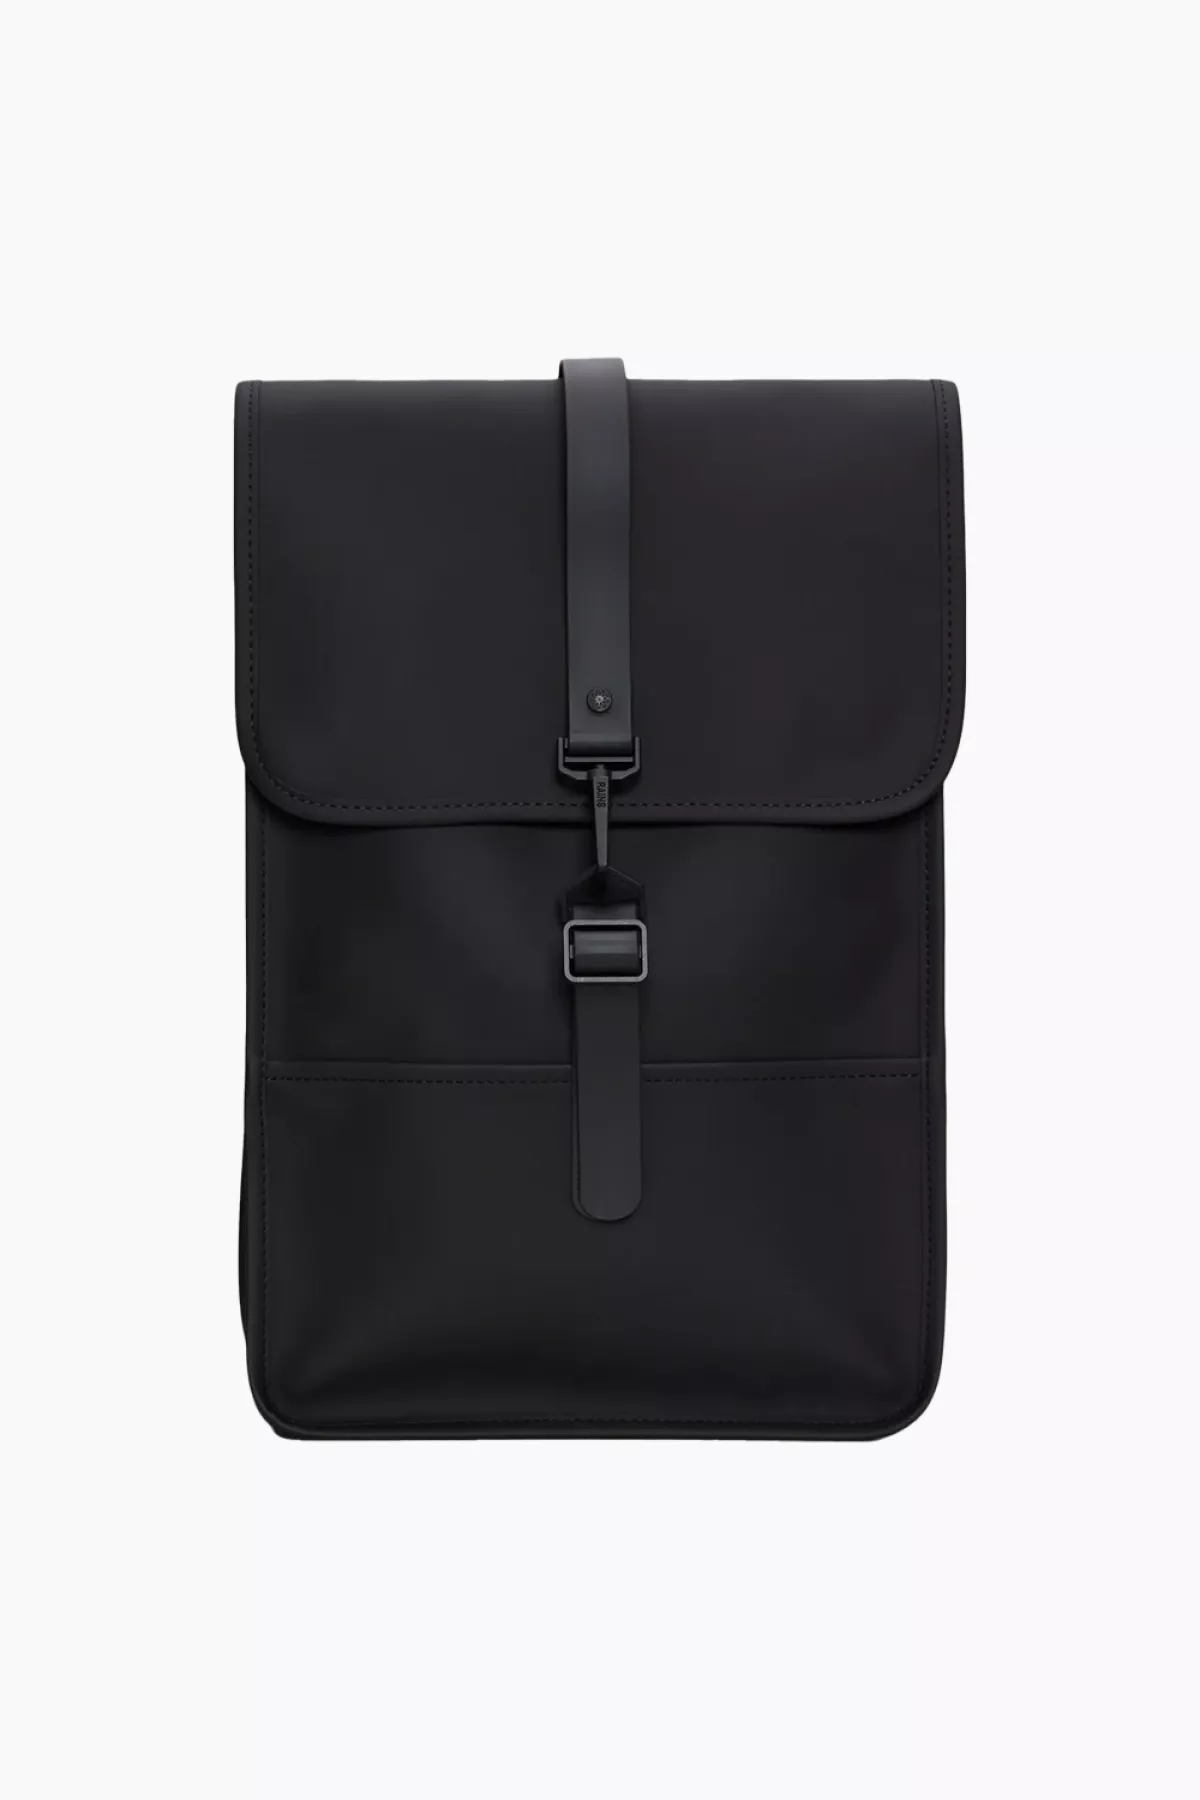 #1 - Backpack Mini W3 - Black - Rains - Sort One Size